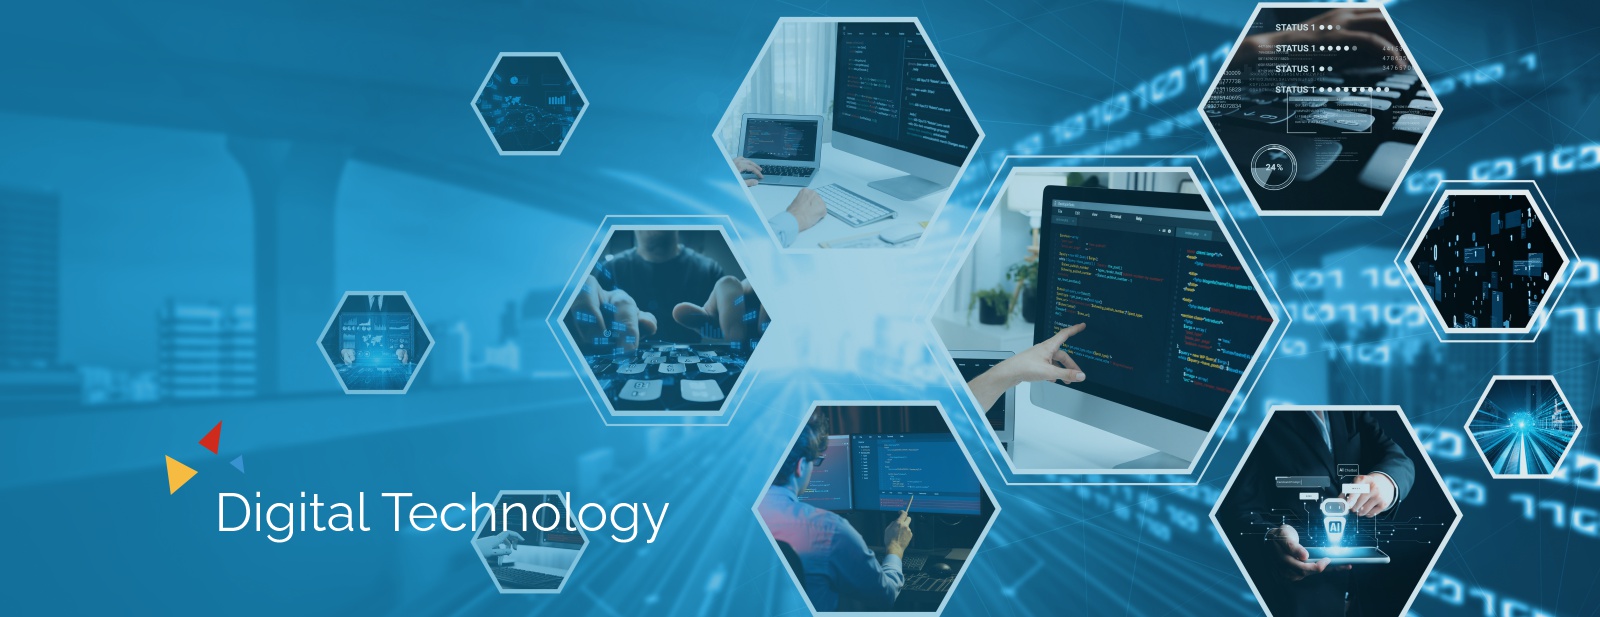 digitaltechnology_bg